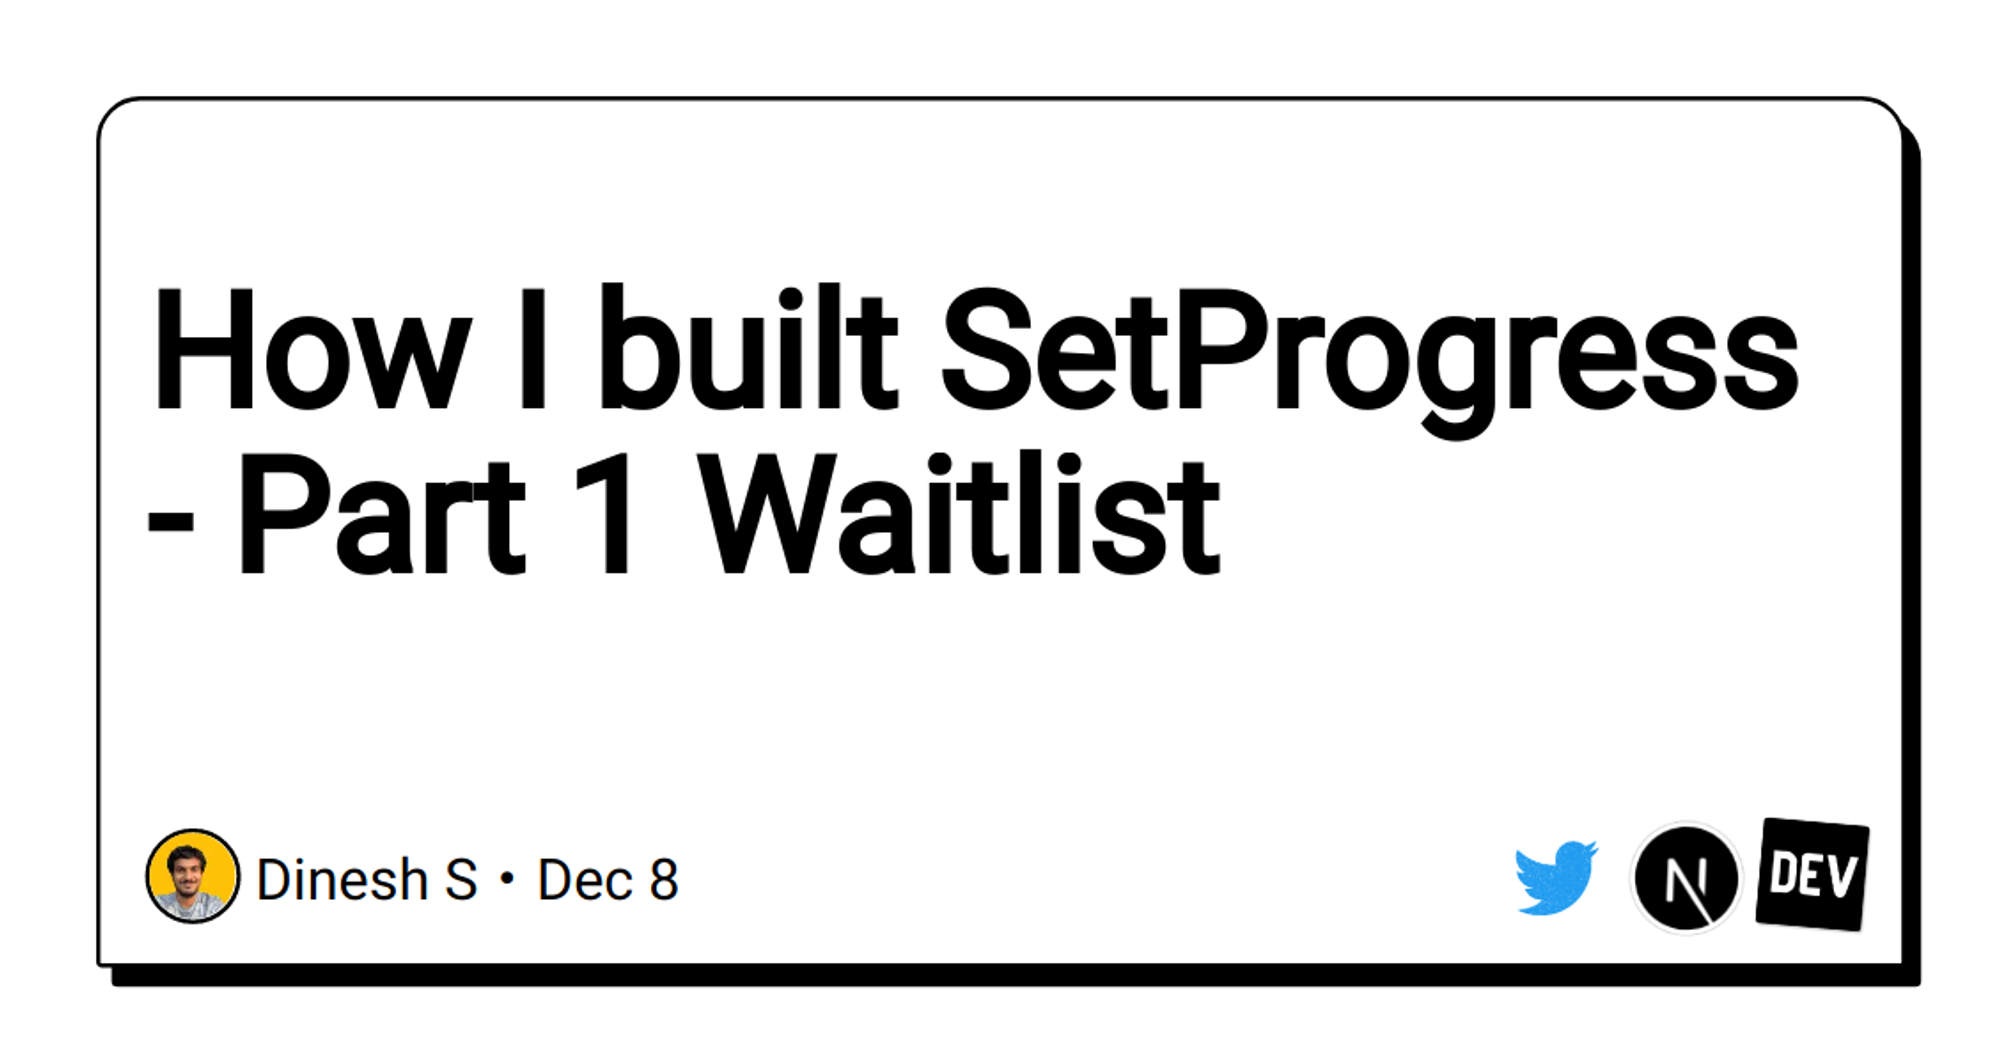 How I built SetProgress - Part 1 Waitlist